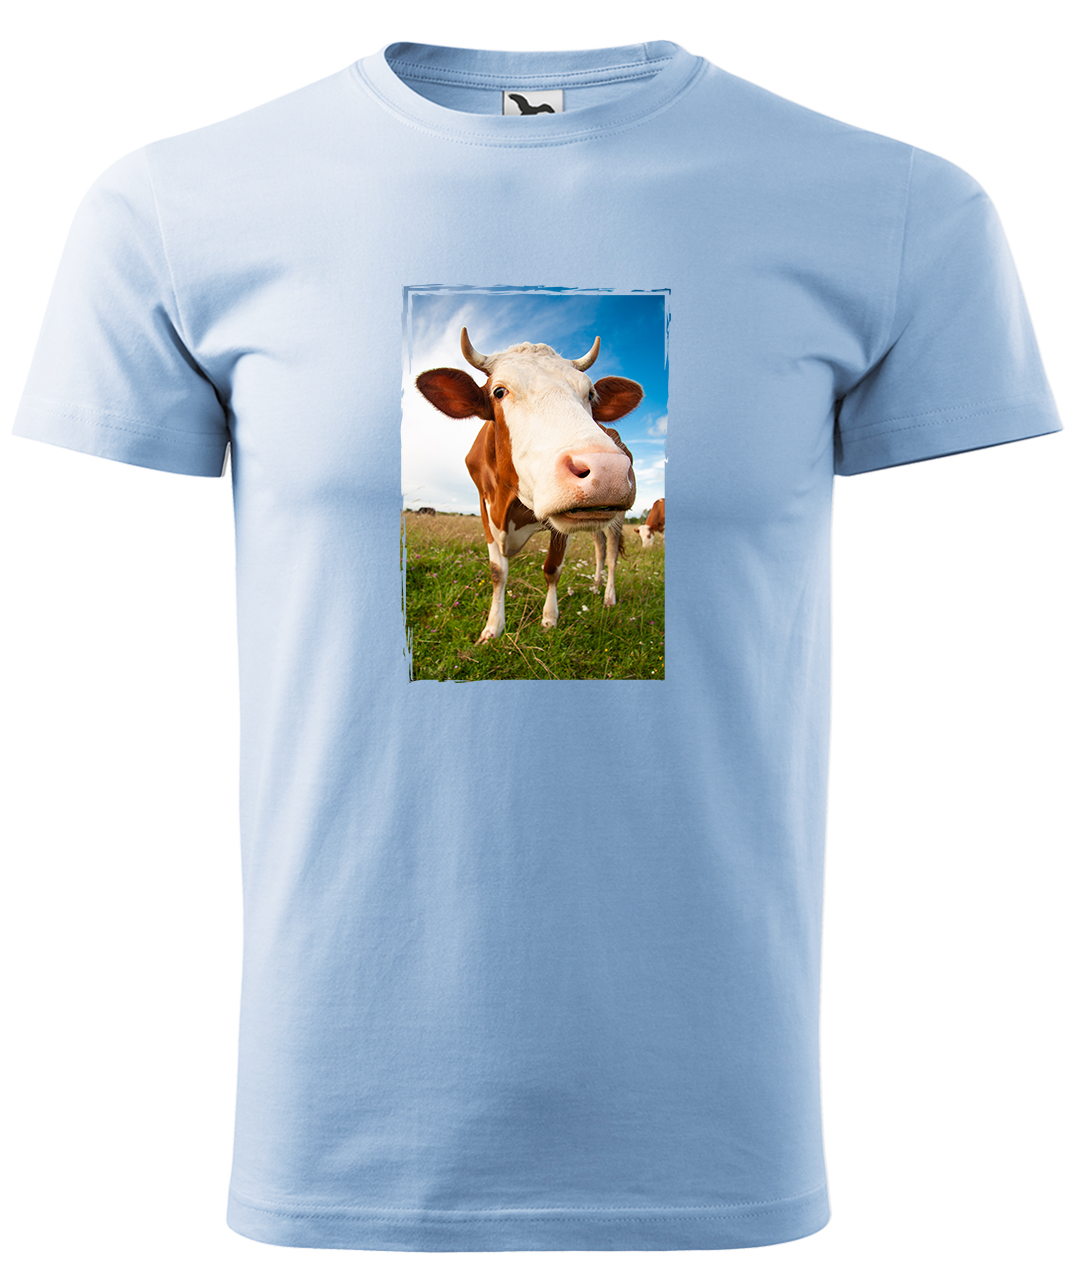 Dětské tričko s krávou - Na pastvě Velikost: 8 let / 134 cm, Barva: Nebesky modrá (15), Délka rukávu: Krátký rukáv